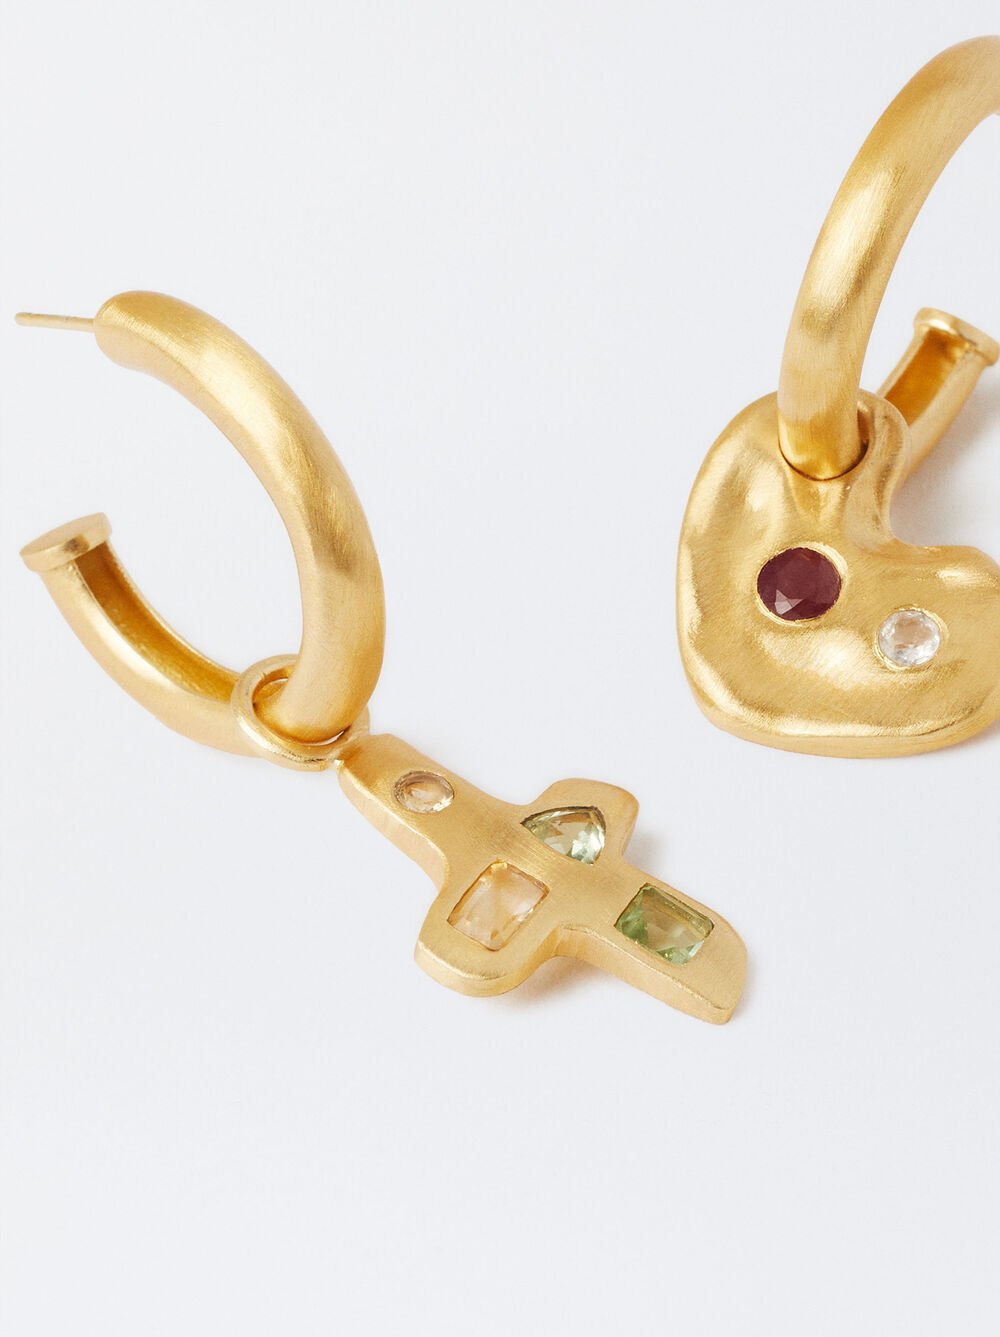 Matte Effect Gold-Plated Earrings 18k